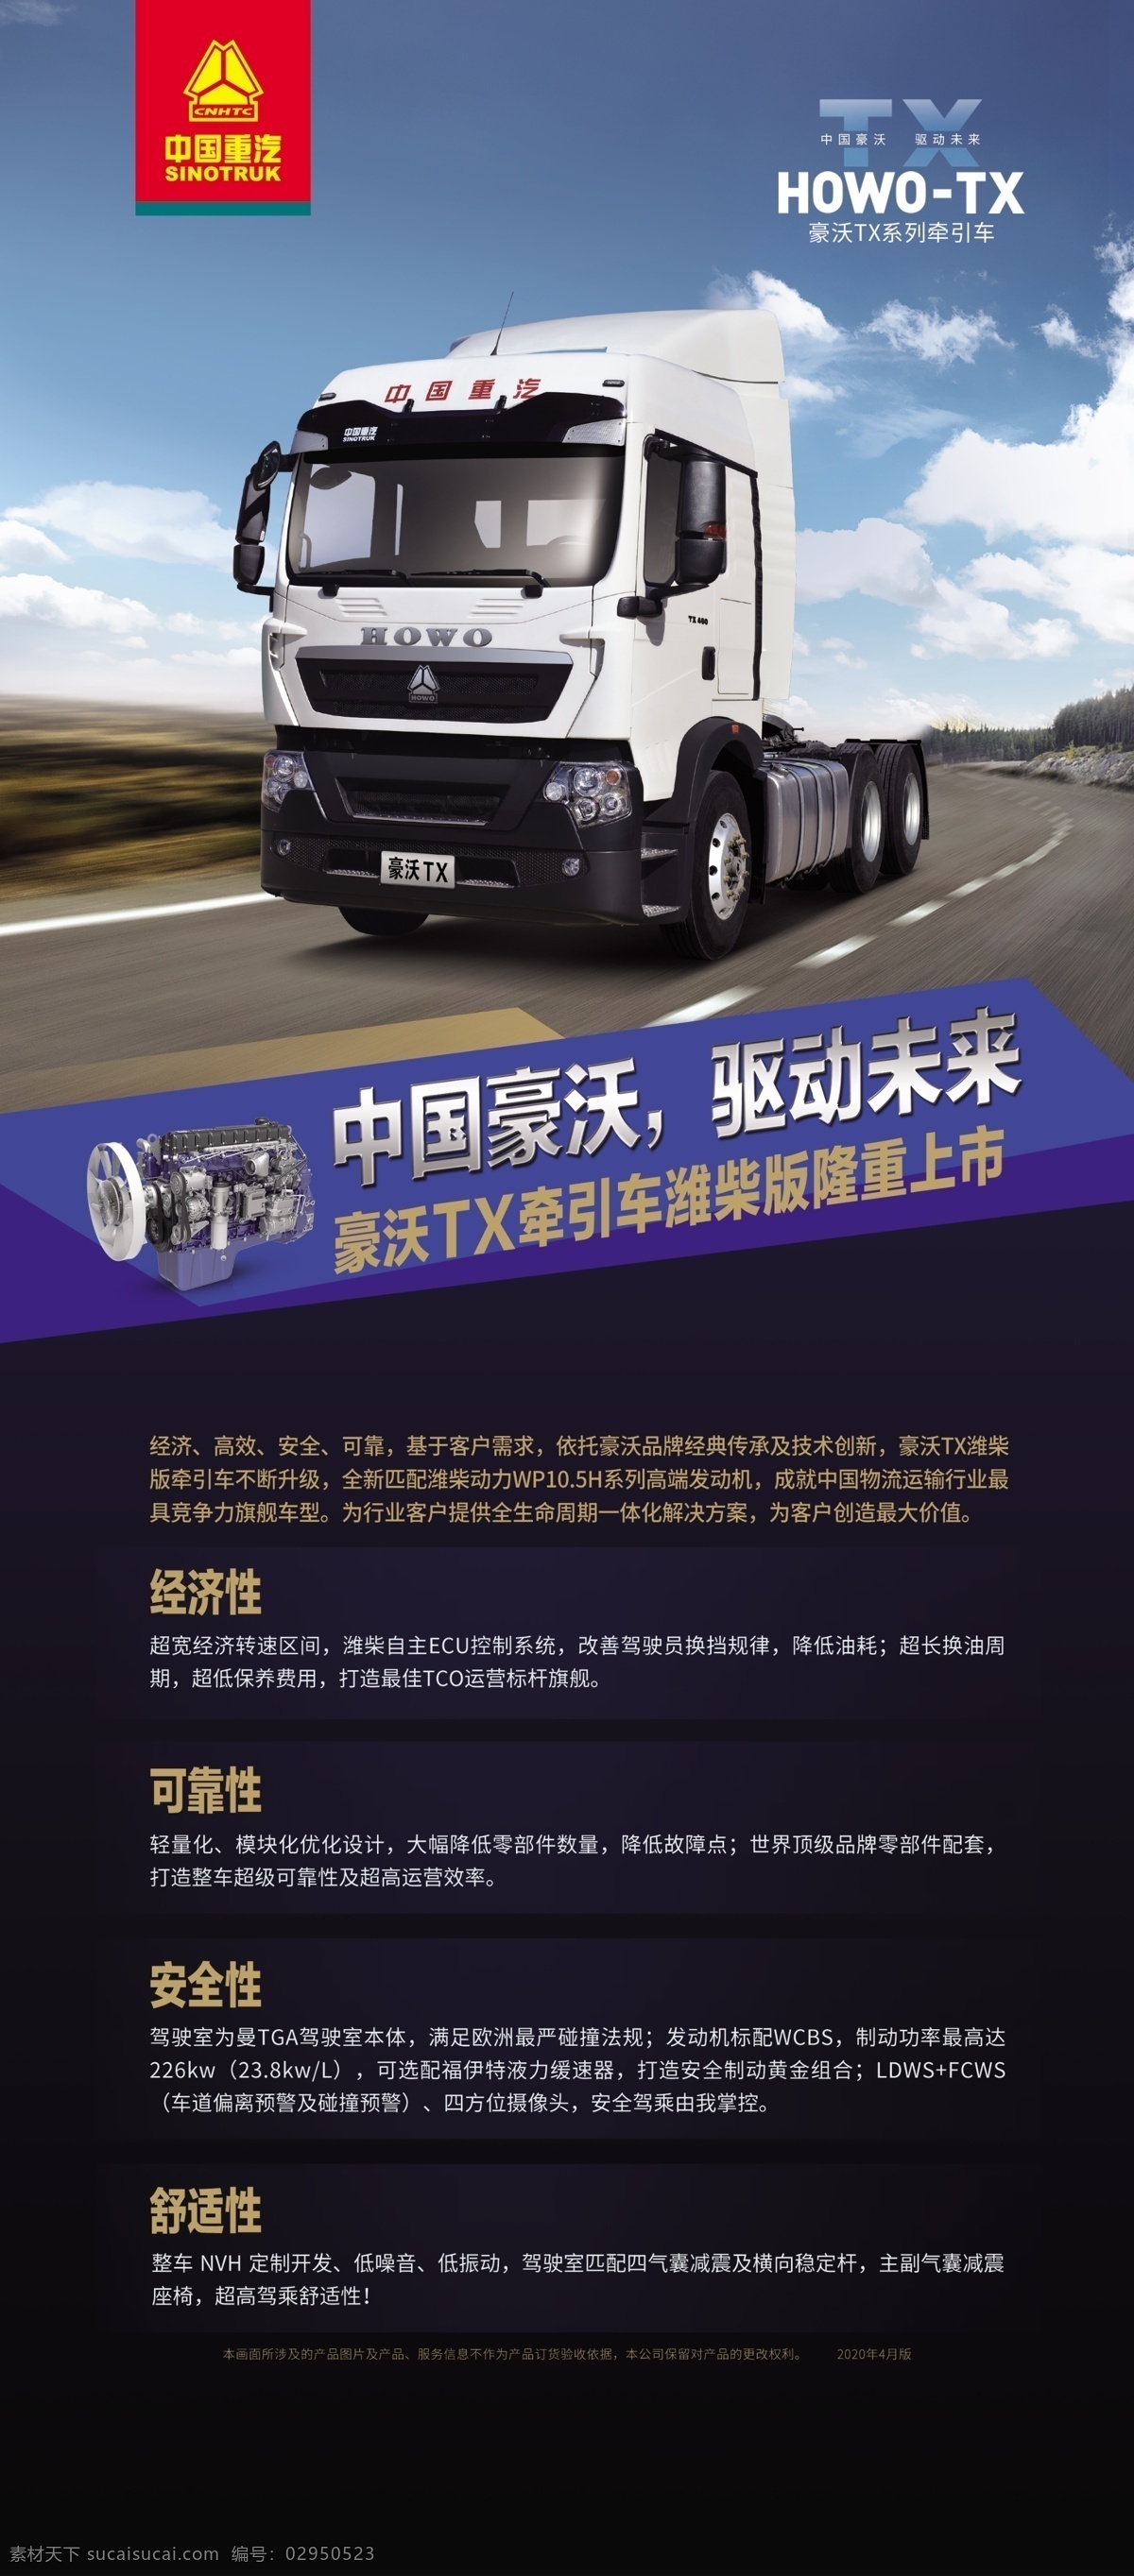 豪 沃 tx 牵引车 潍 柴 版 展架 画面 中国重汽 豪沃 tx牵引车 潍柴动力 货车 物流 运输 分层